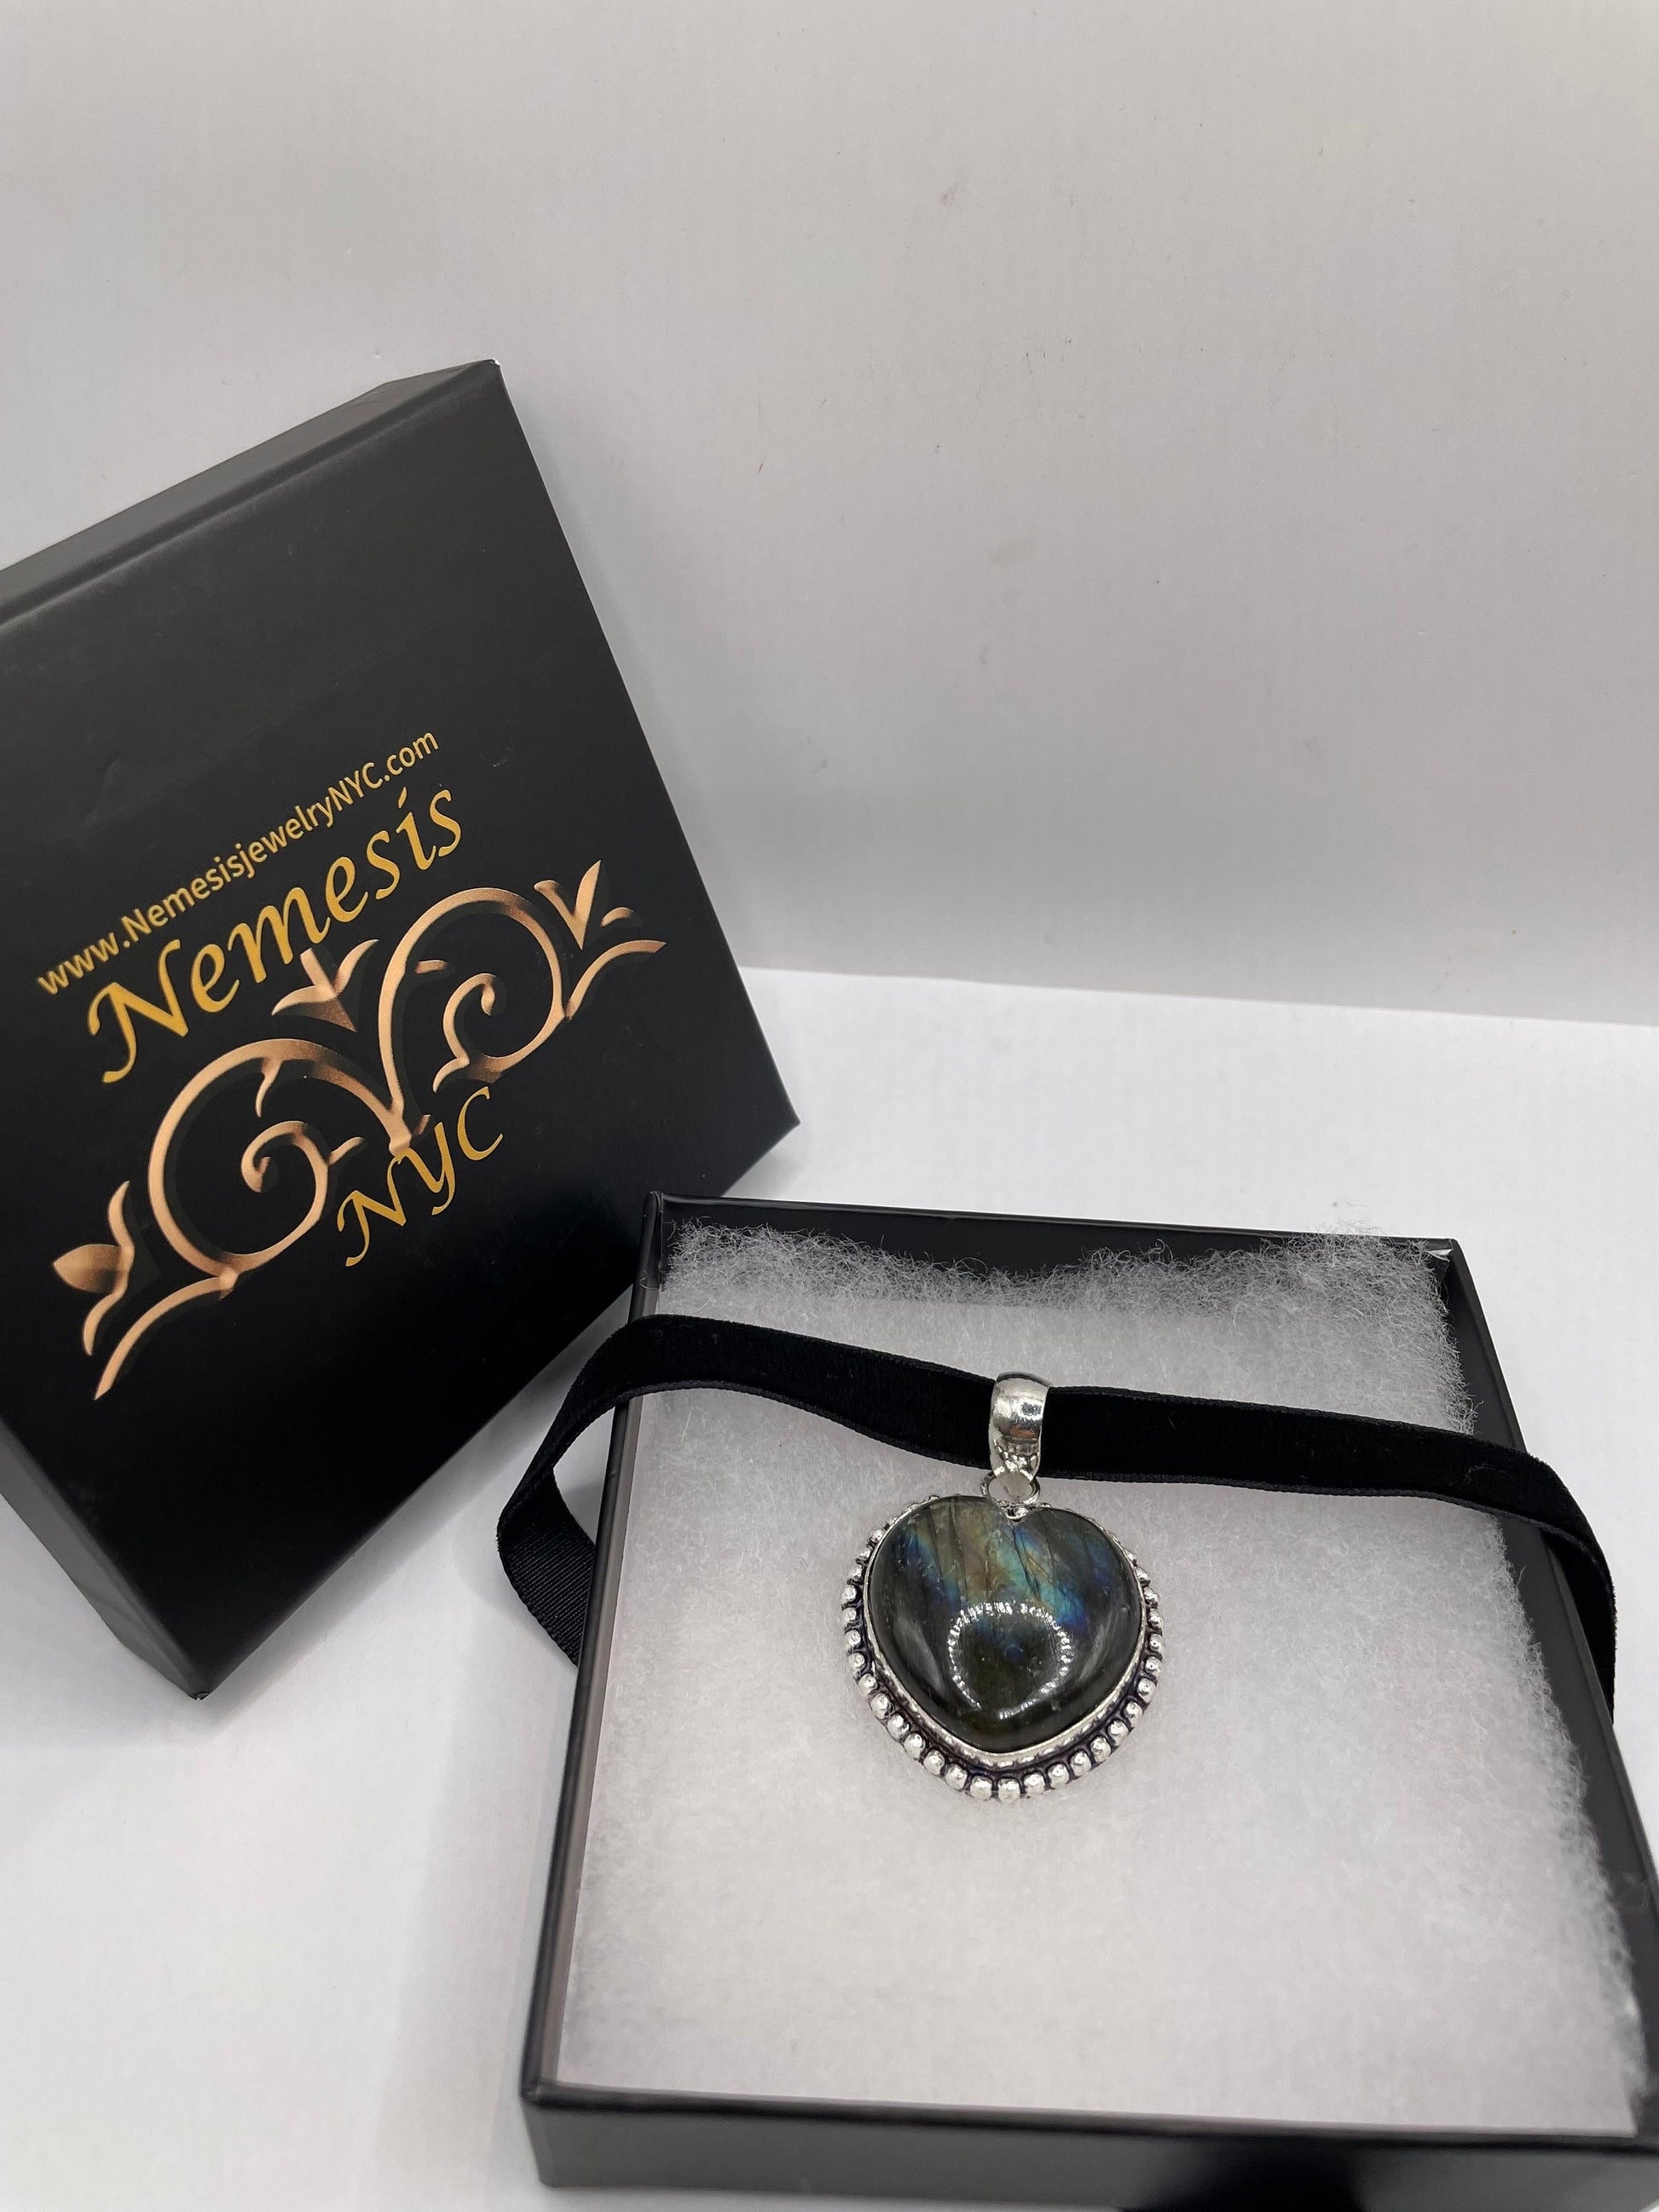 Vintage Heart Antique Blue Labradorite Choker Necklace